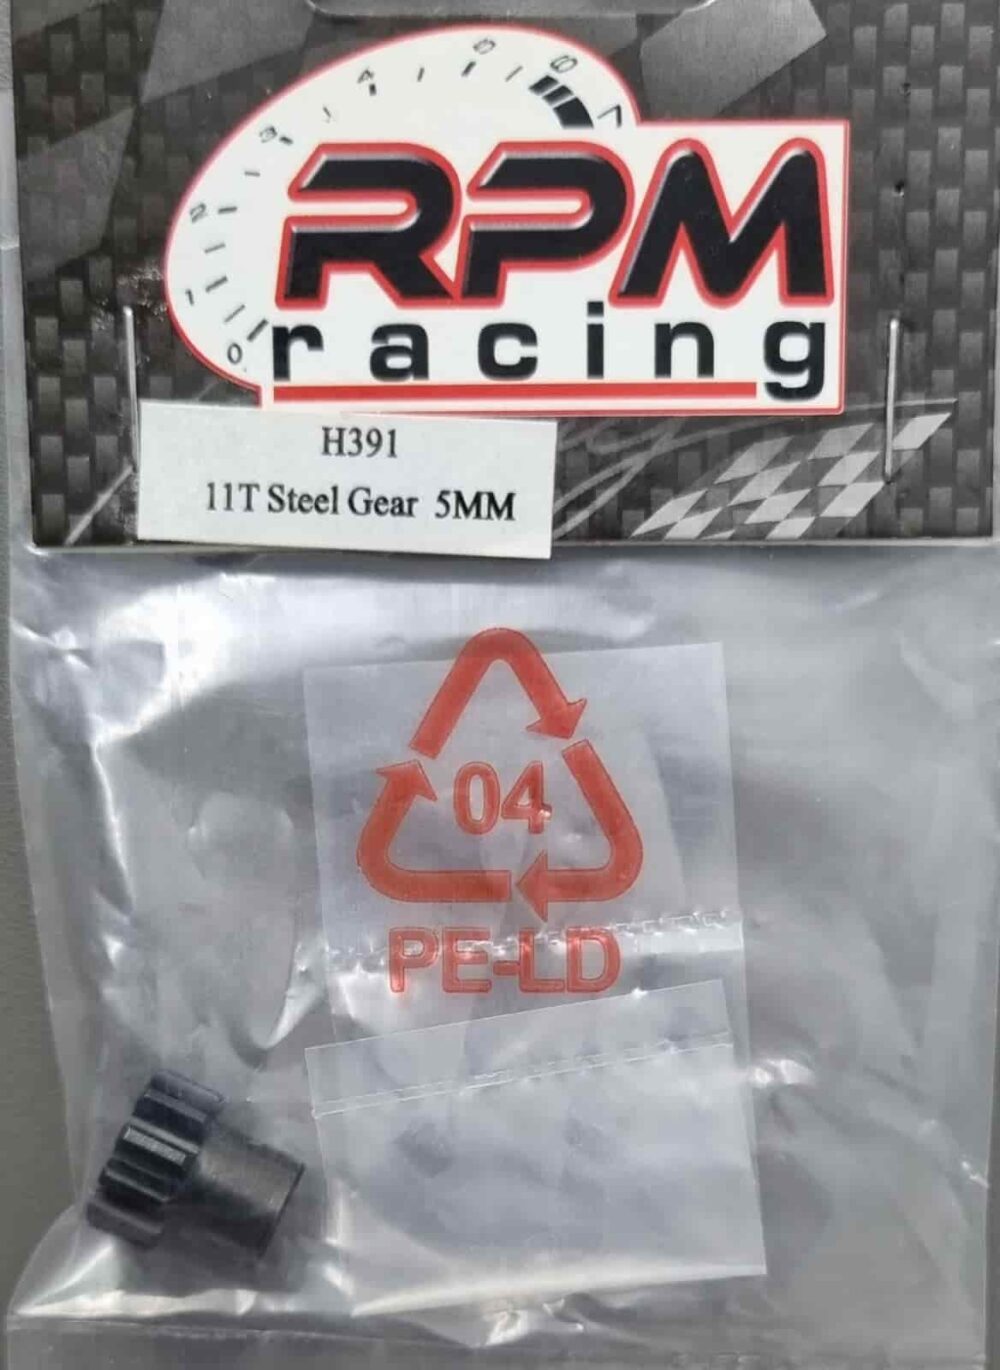 RPM-Racing - H391 Pignone 11T Acciaio M1 5mm